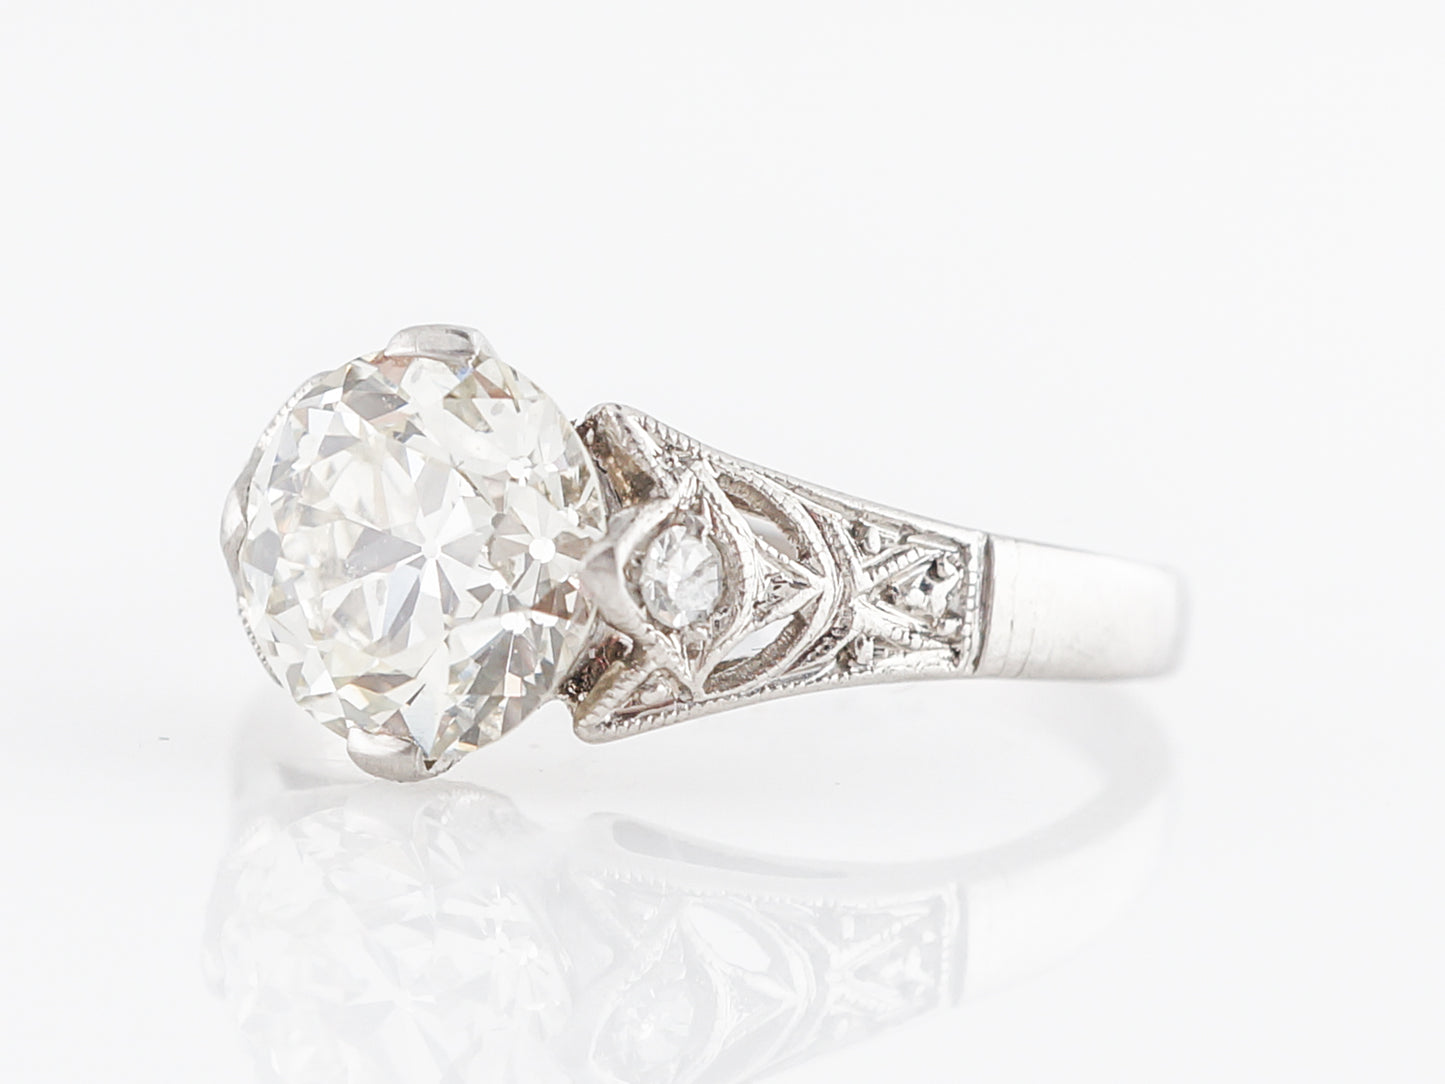 Exquisite Art Deco Diamond Engagement Ring in Platinum